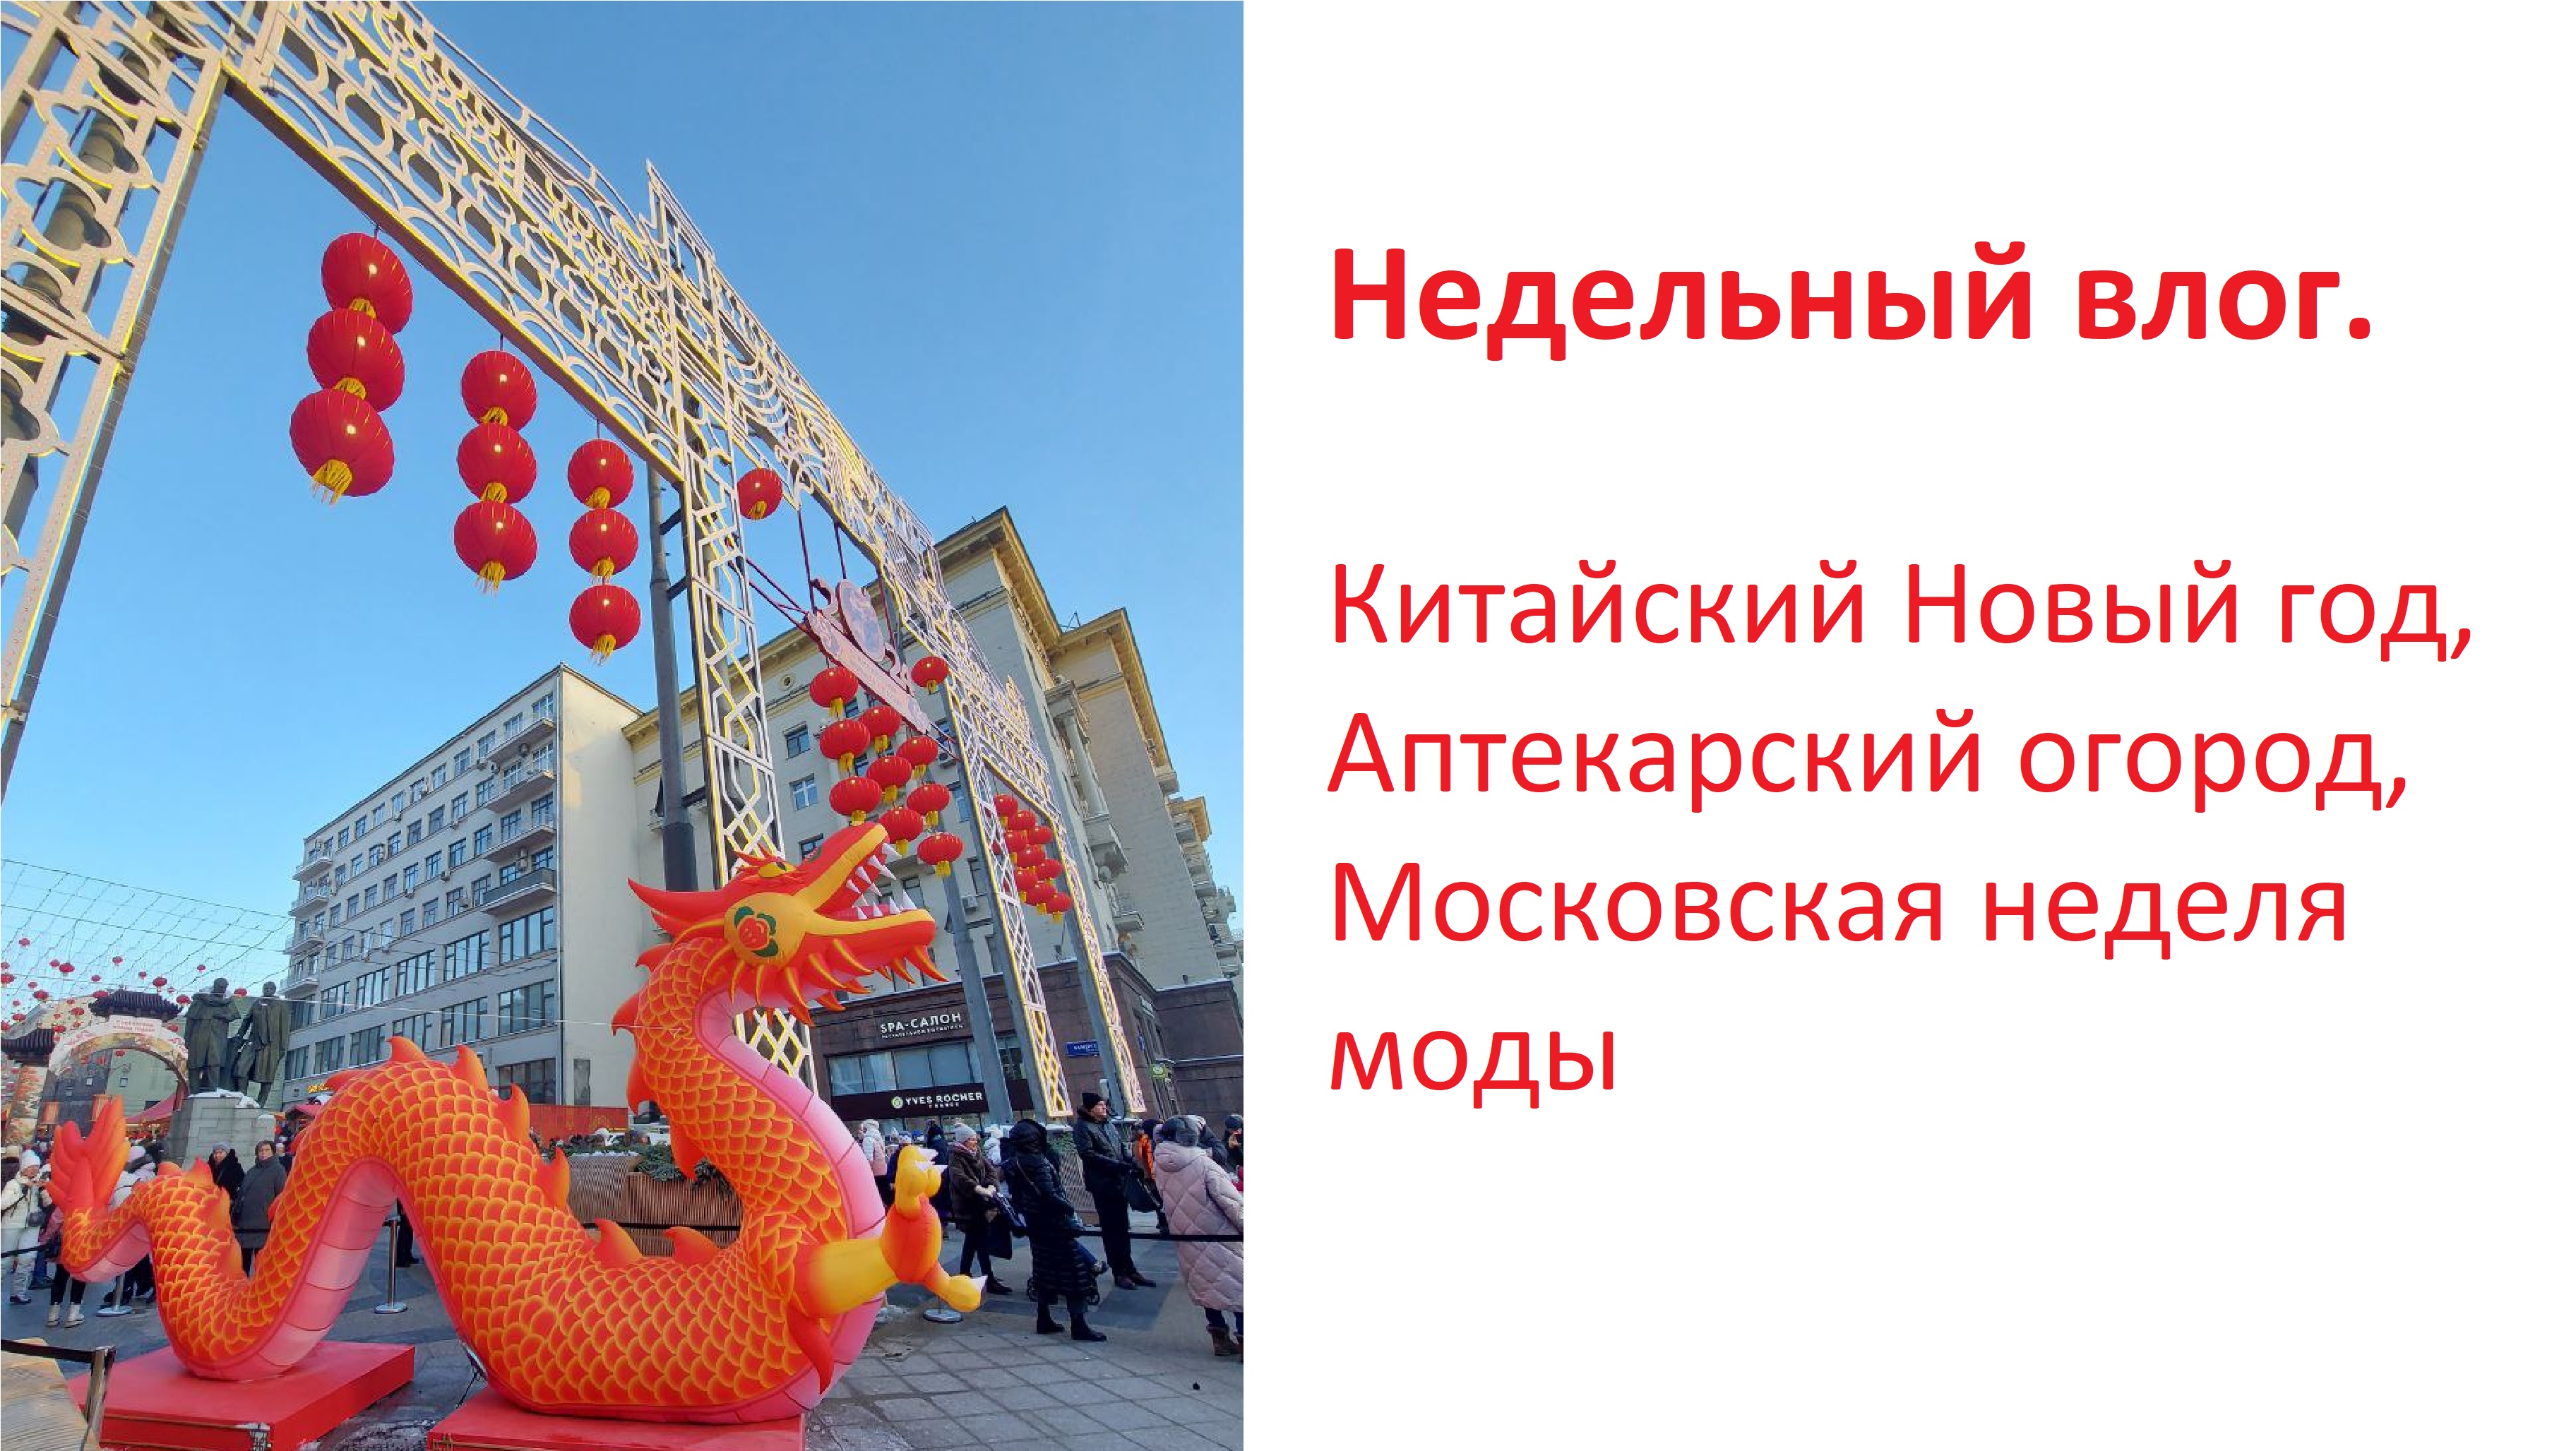 Недельный влог. Китайский Новый год, Аптекарский огород, Московская неделя моды